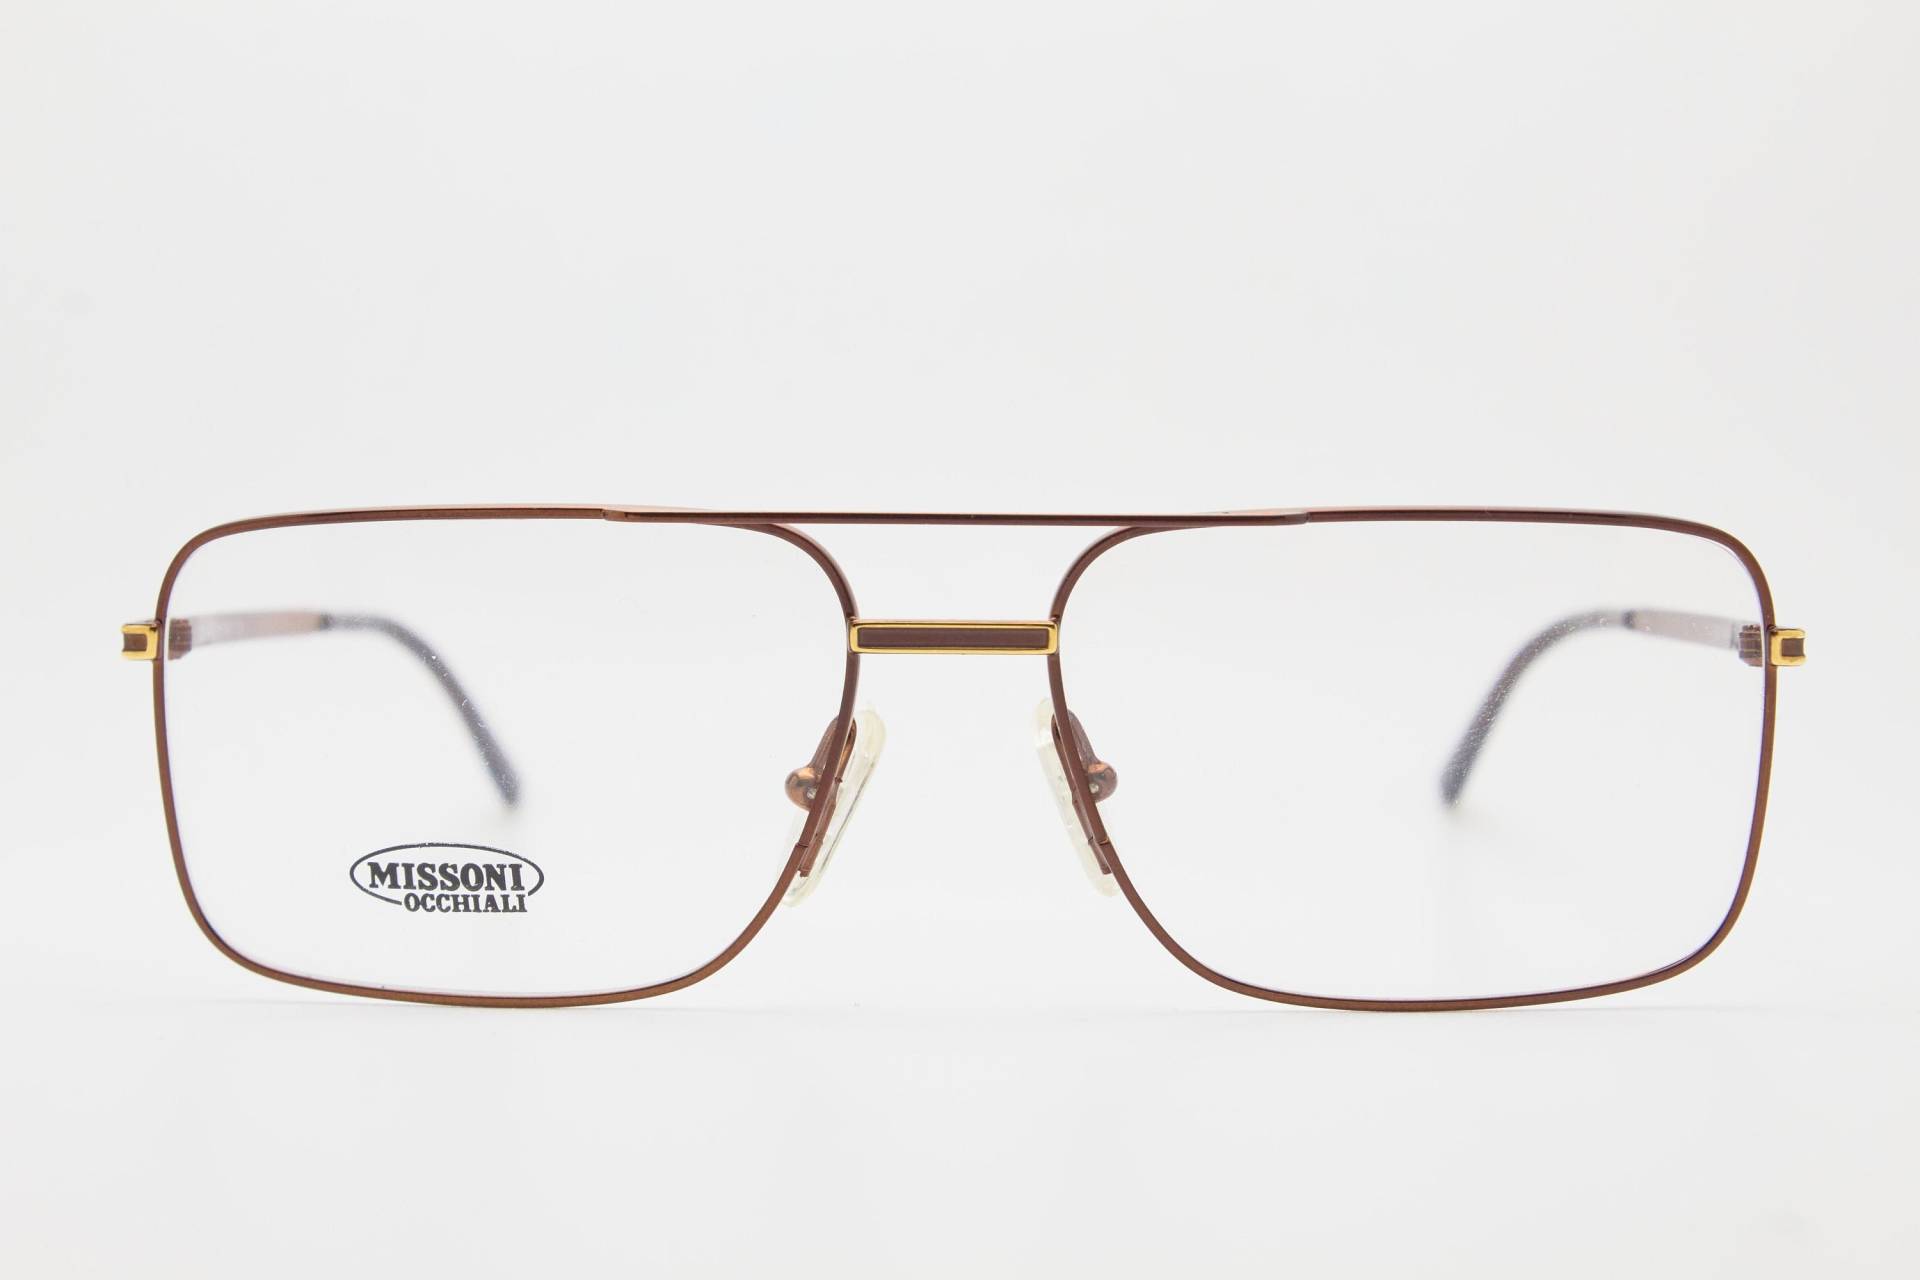 Missoni Vintage Brille M414 Brillengestell, Vintage Brillen 1980Er Jahre, Oversize Pilotenbrillen, 80Er Sonnenbrillen von VintageGlassesVault